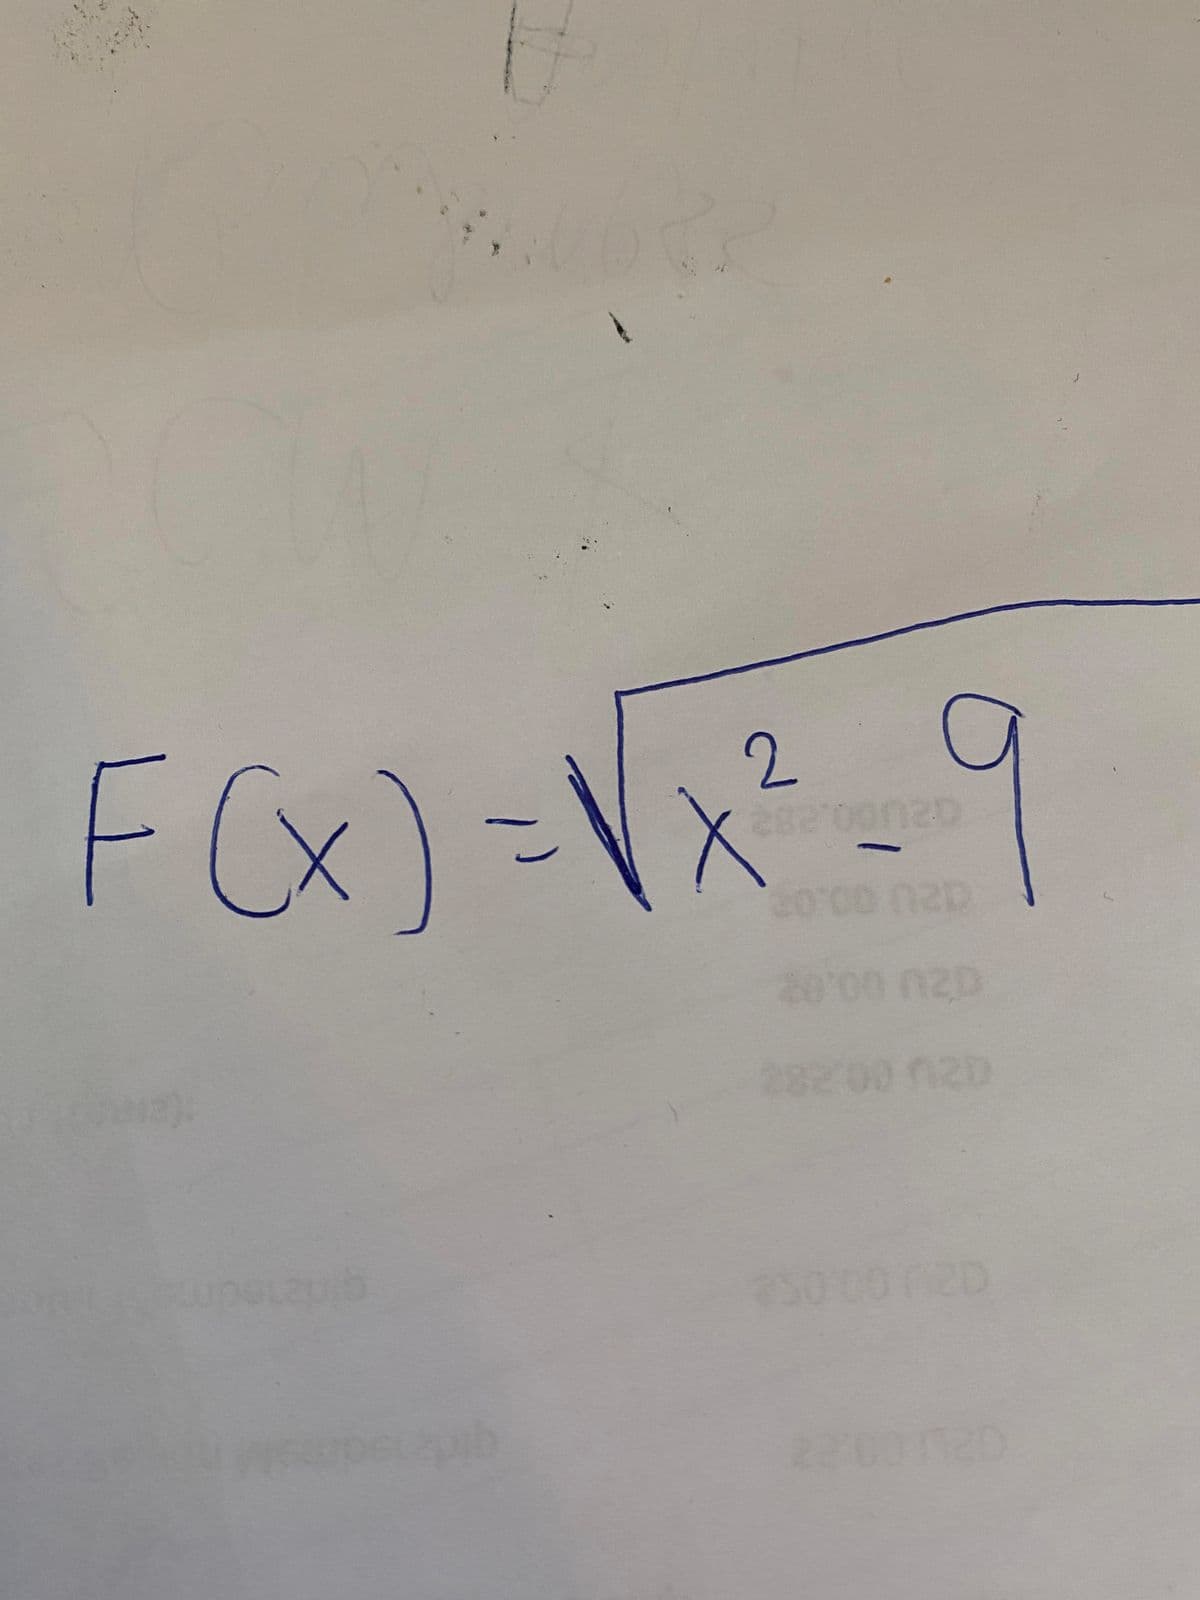 Fx)=Vx²-9
FX)=\X
2.
28200 020
23000020
120
